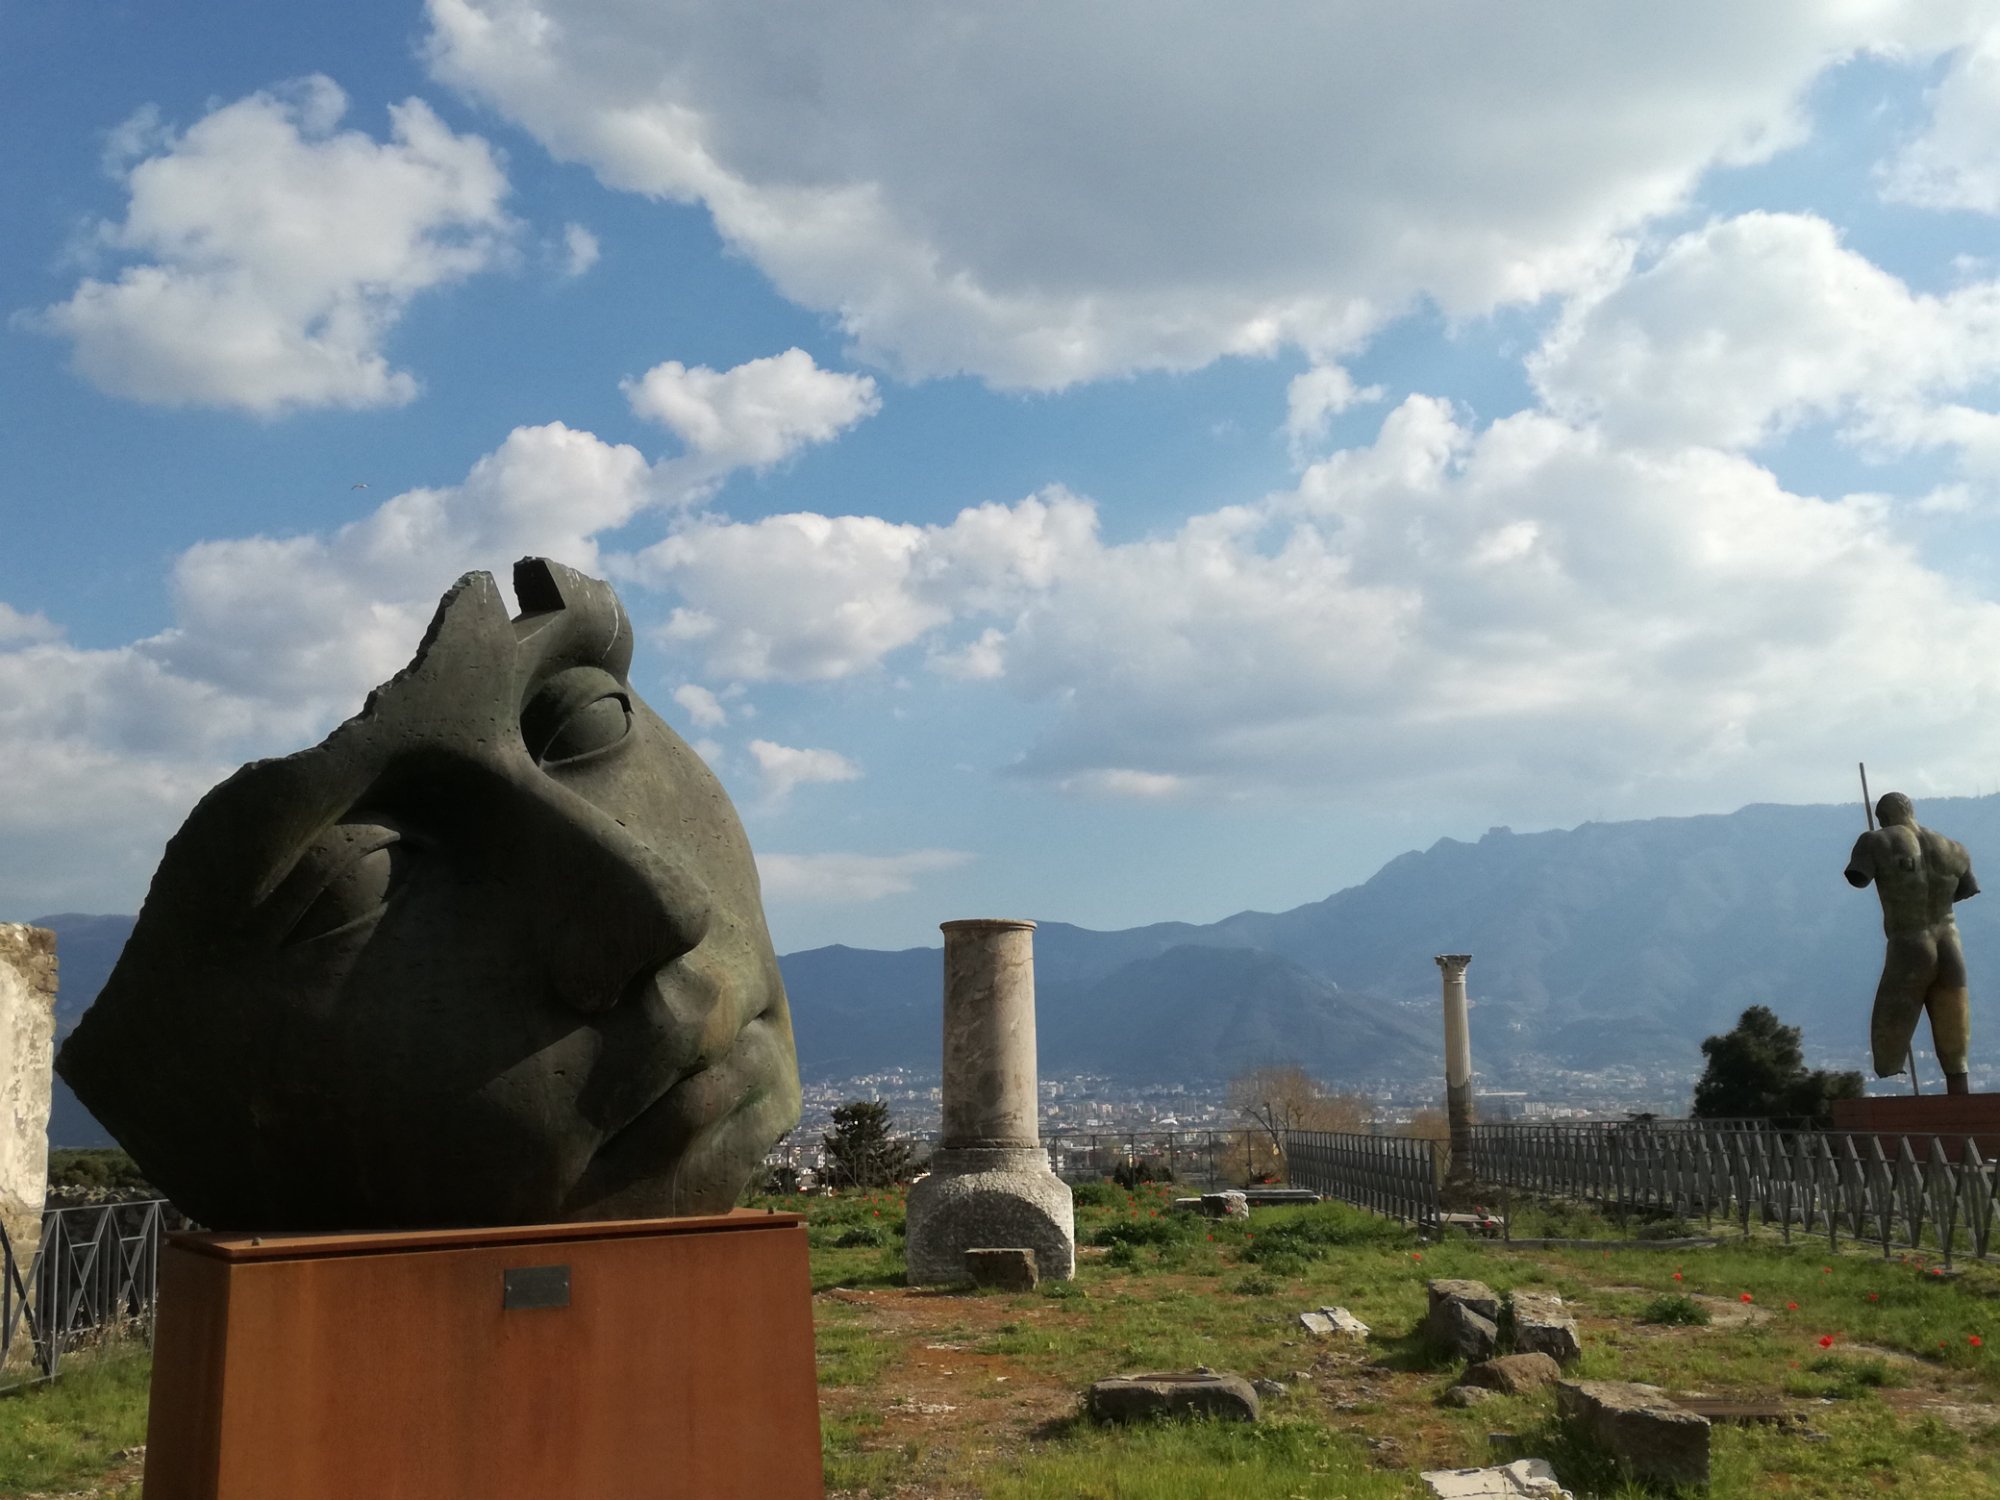 Pompeii Archaeological Tour